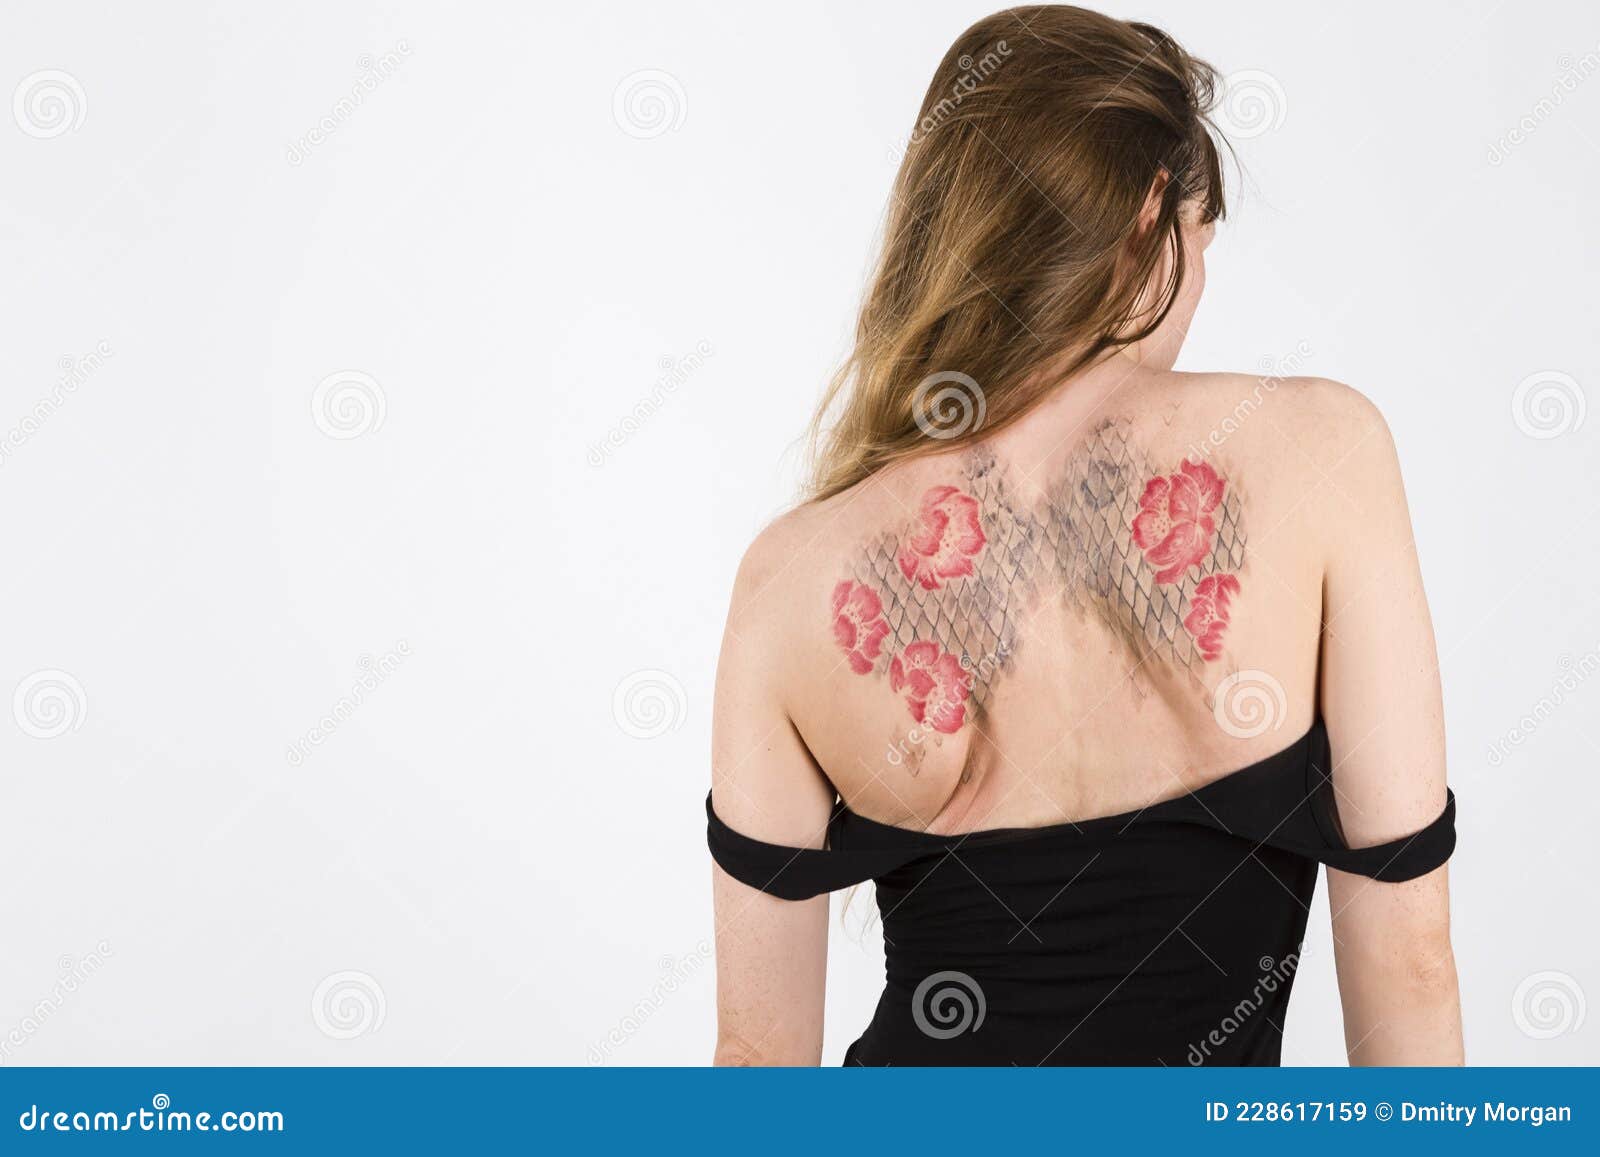 Брюнетка с большими татуировками на теле